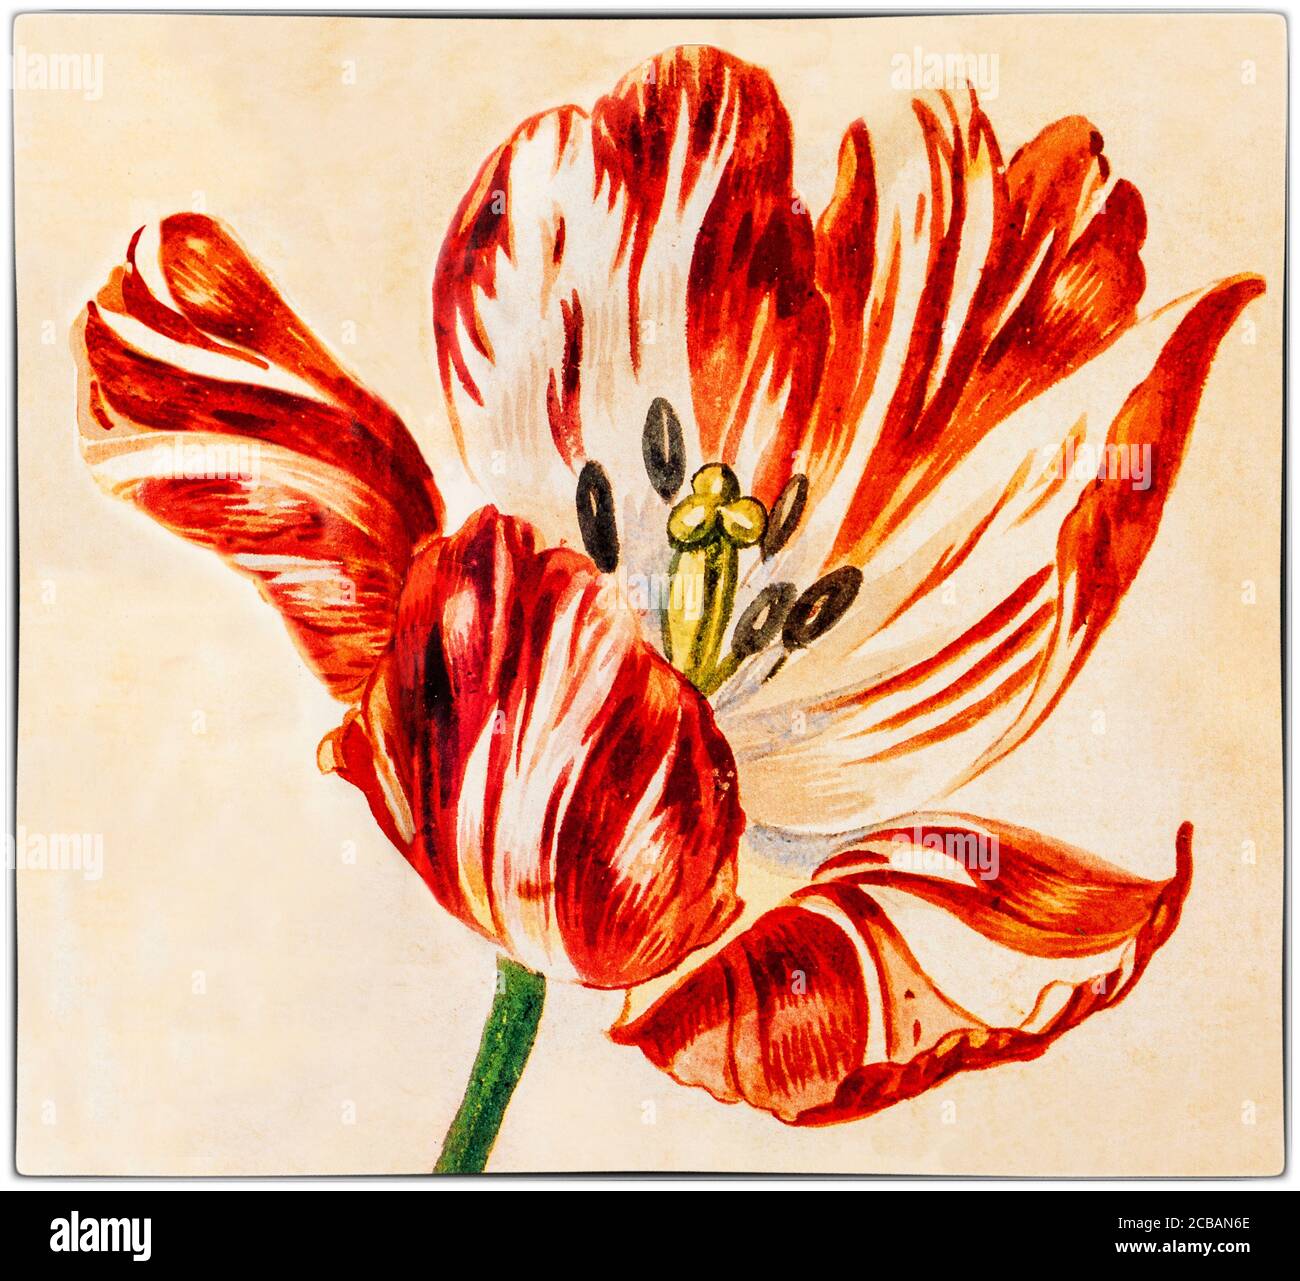 Tulipano 'rotto' dipinto da Jan van Huysum (1682-1749), un pittore olandese. I tulipani 'rotti' hanno un'infezione virale, che ha fatto sì che i petali mostrino belle e sorprendenti striature di colore in essi, notate dal botanico fiammingo Carolus Clusius, padre dell'ossessione olandese con i tulipani, nei Paesi Bassi nel 1600. Foto Stock